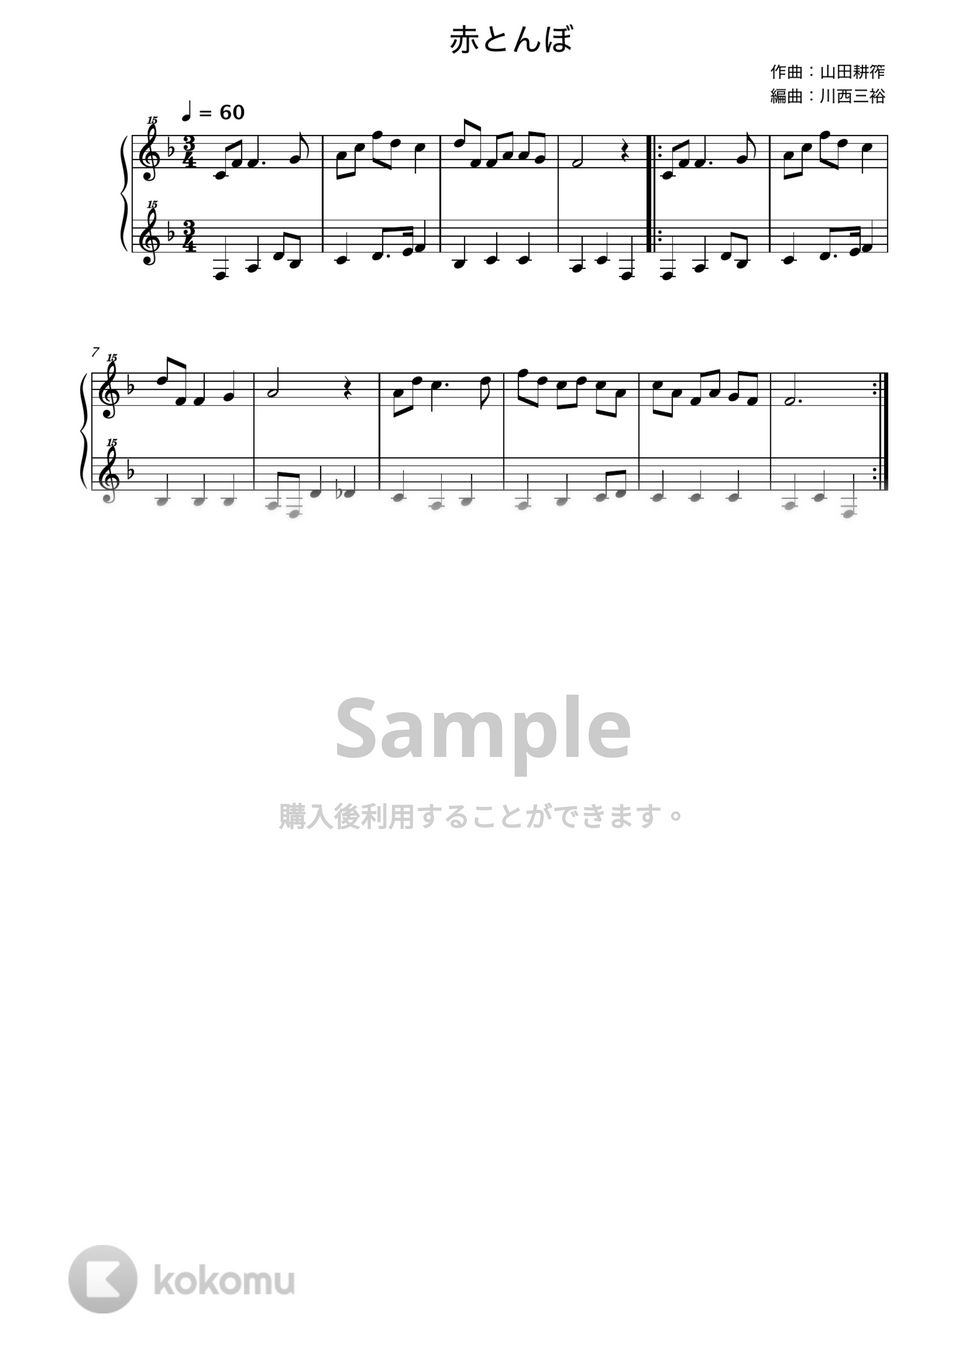 赤とんぼ (トイピアノ / 25鍵盤 / 童謡) by 川西三裕